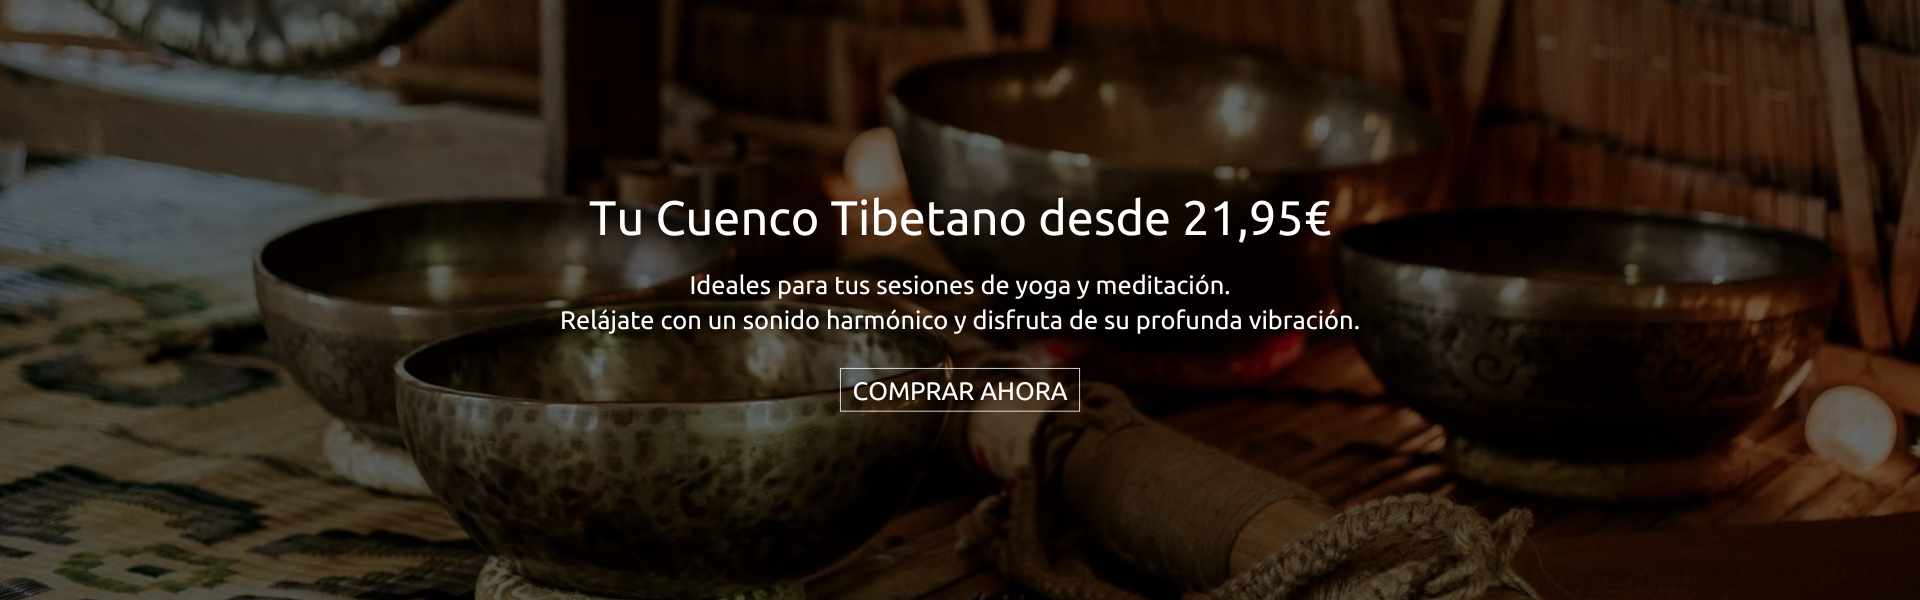 Tu Cuenco Tibetano desde 21,95€. Ideales para tus sesiones de yoga y meditación. Relájate con un sonido harmónico y disfruta de su profunda vibración.